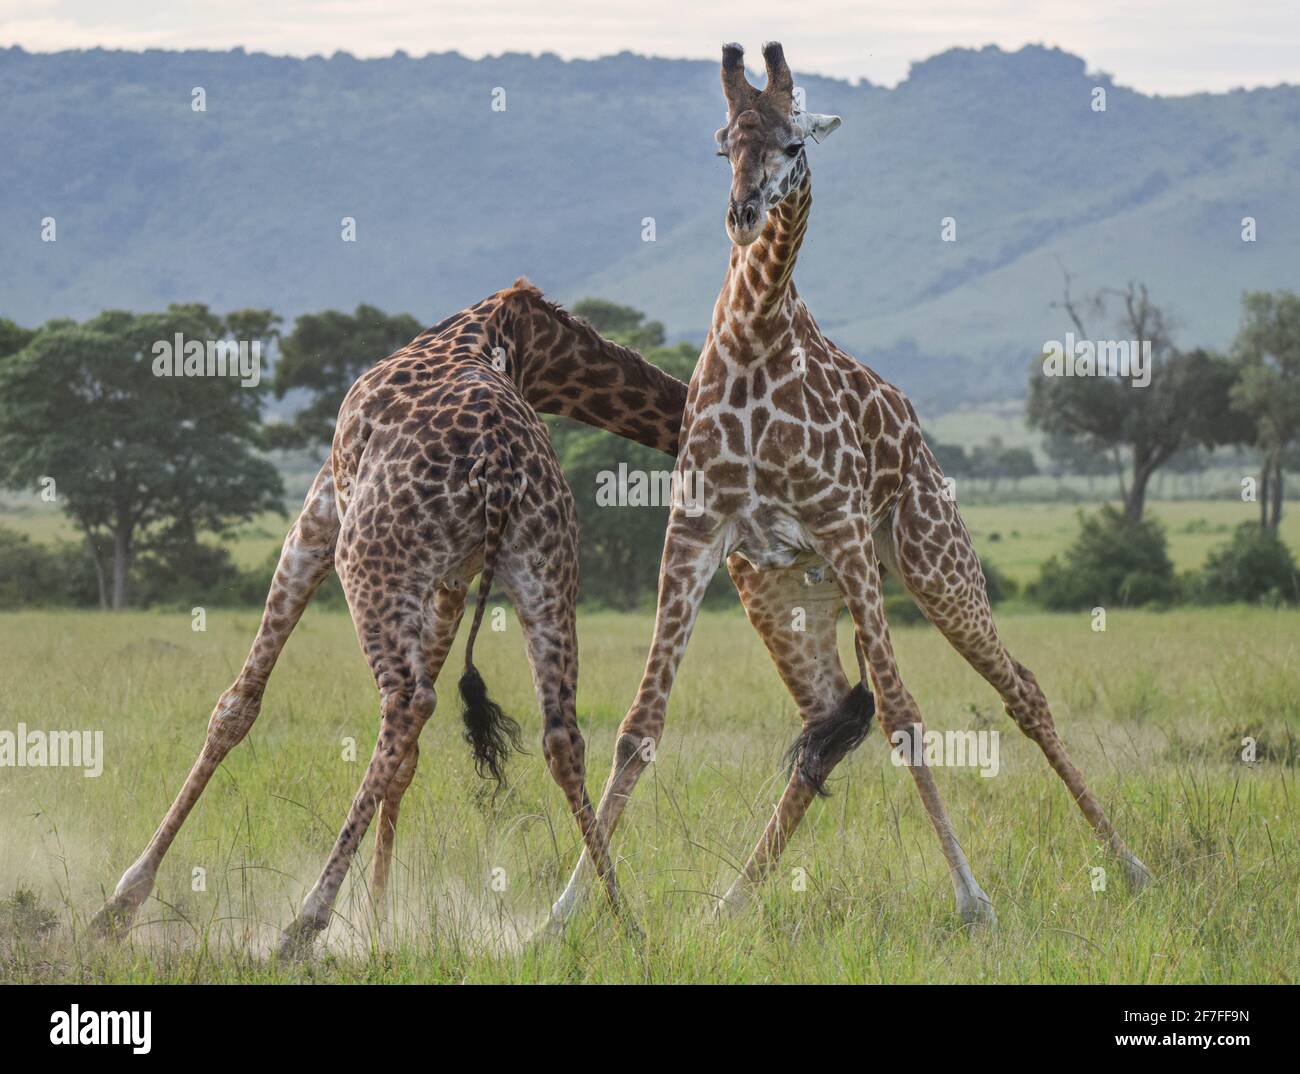 RÉSERVE NATIONALE DE MAASAI MARA, KENYA : alors qu'une girafe se balance le cou avec une force épique, son homologue se tient avec ses jambes écartées pour l'équilibre. CA Banque D'Images